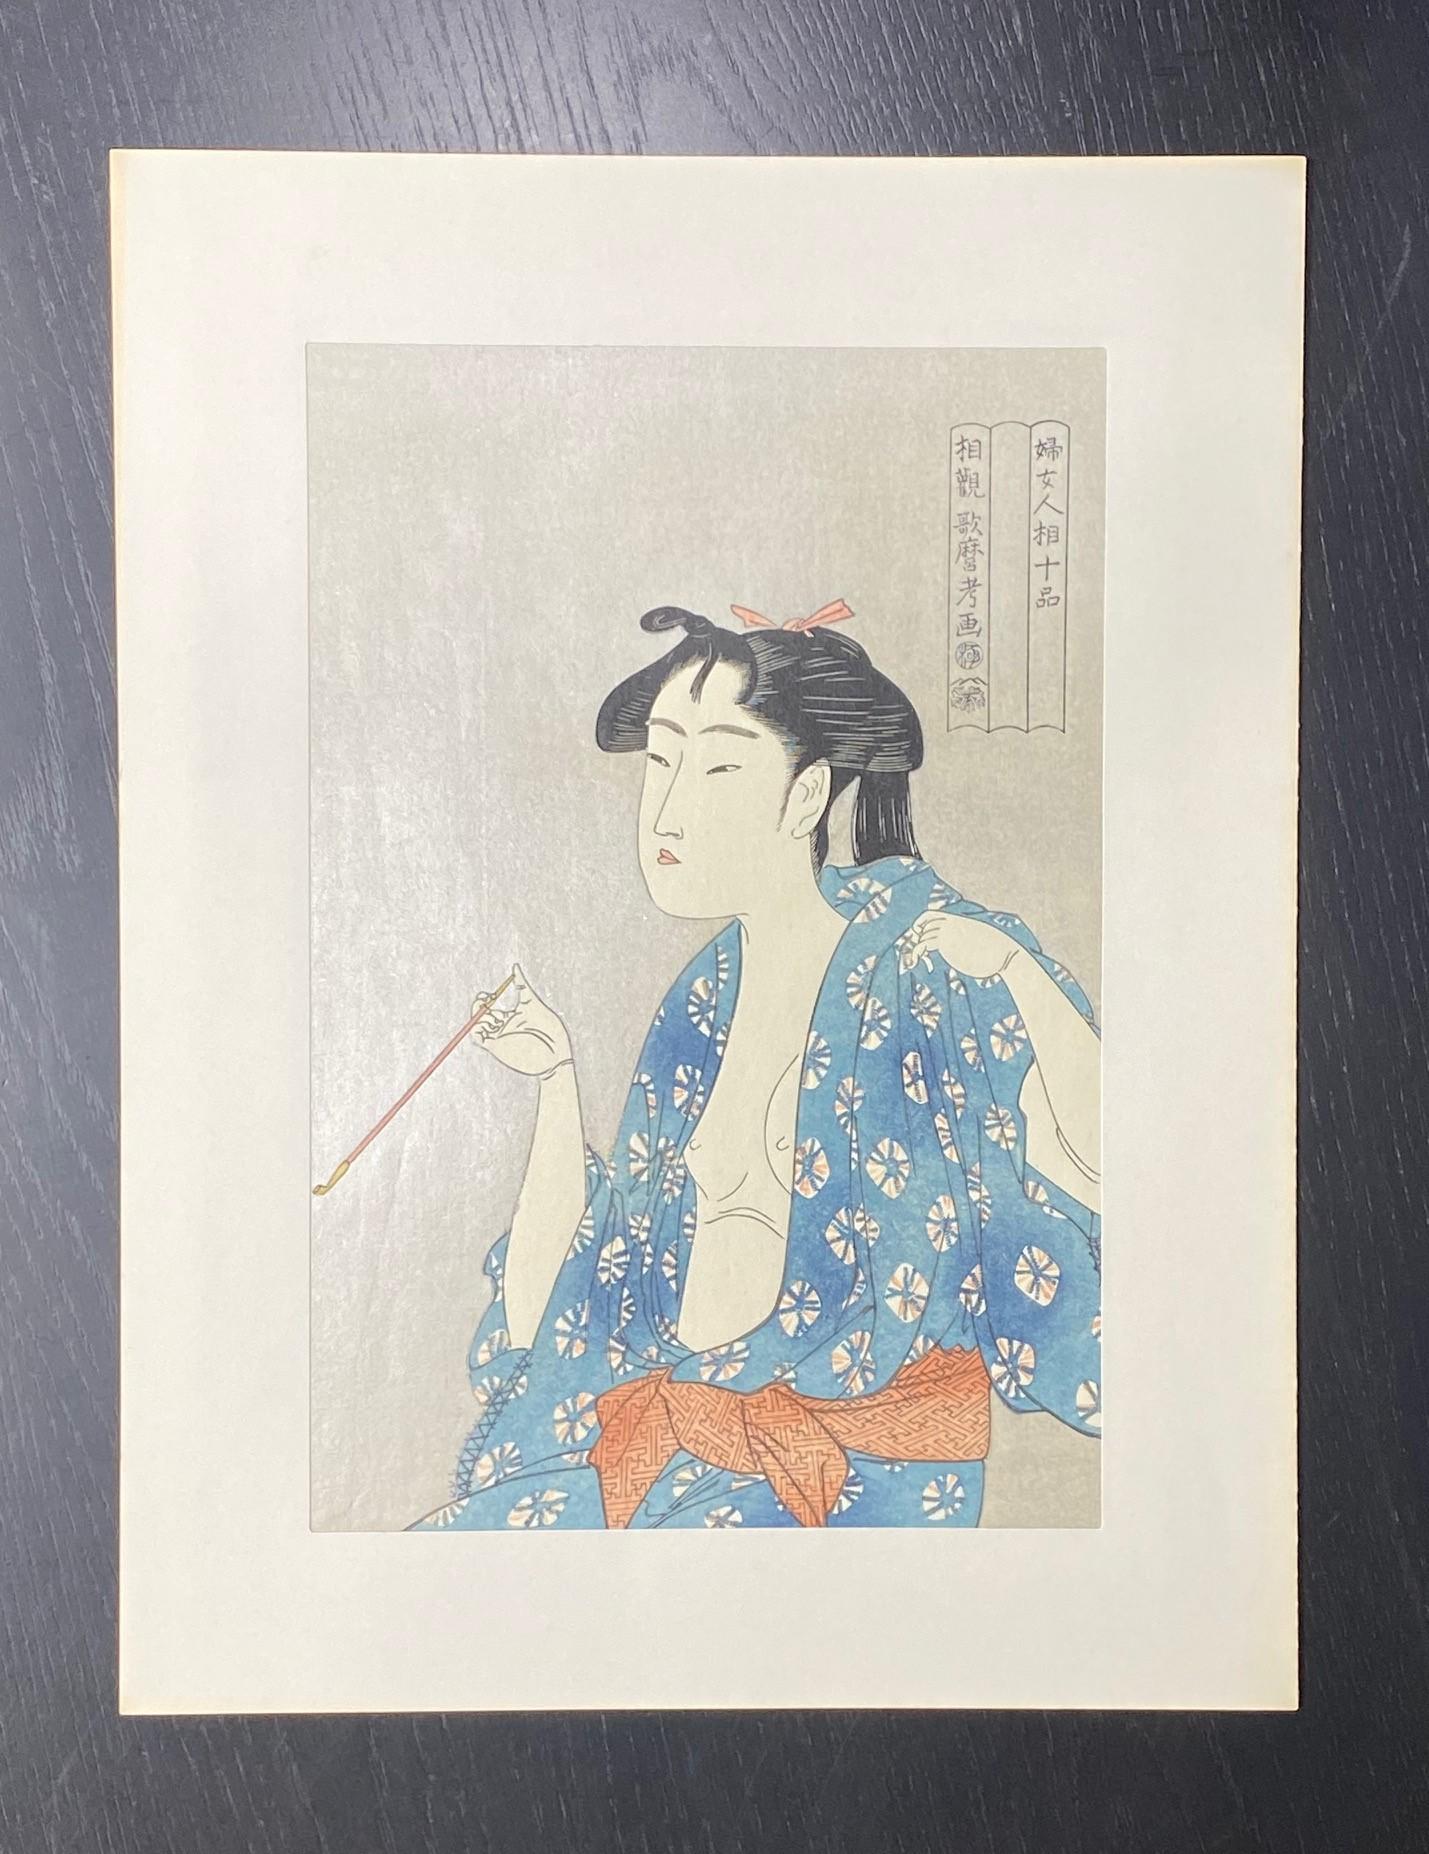 Ein wunderschön komponierter und farbenprächtiger japanischer Farbholzschnitt von Kitagawa Utamaro, der eine halbbekleidete, im Kimono gekleidete nackte Frau, vielleicht eine Geisha oder Kurtisane, zeigt, die sich mit ihrer Opiumpfeife vergnügt. 